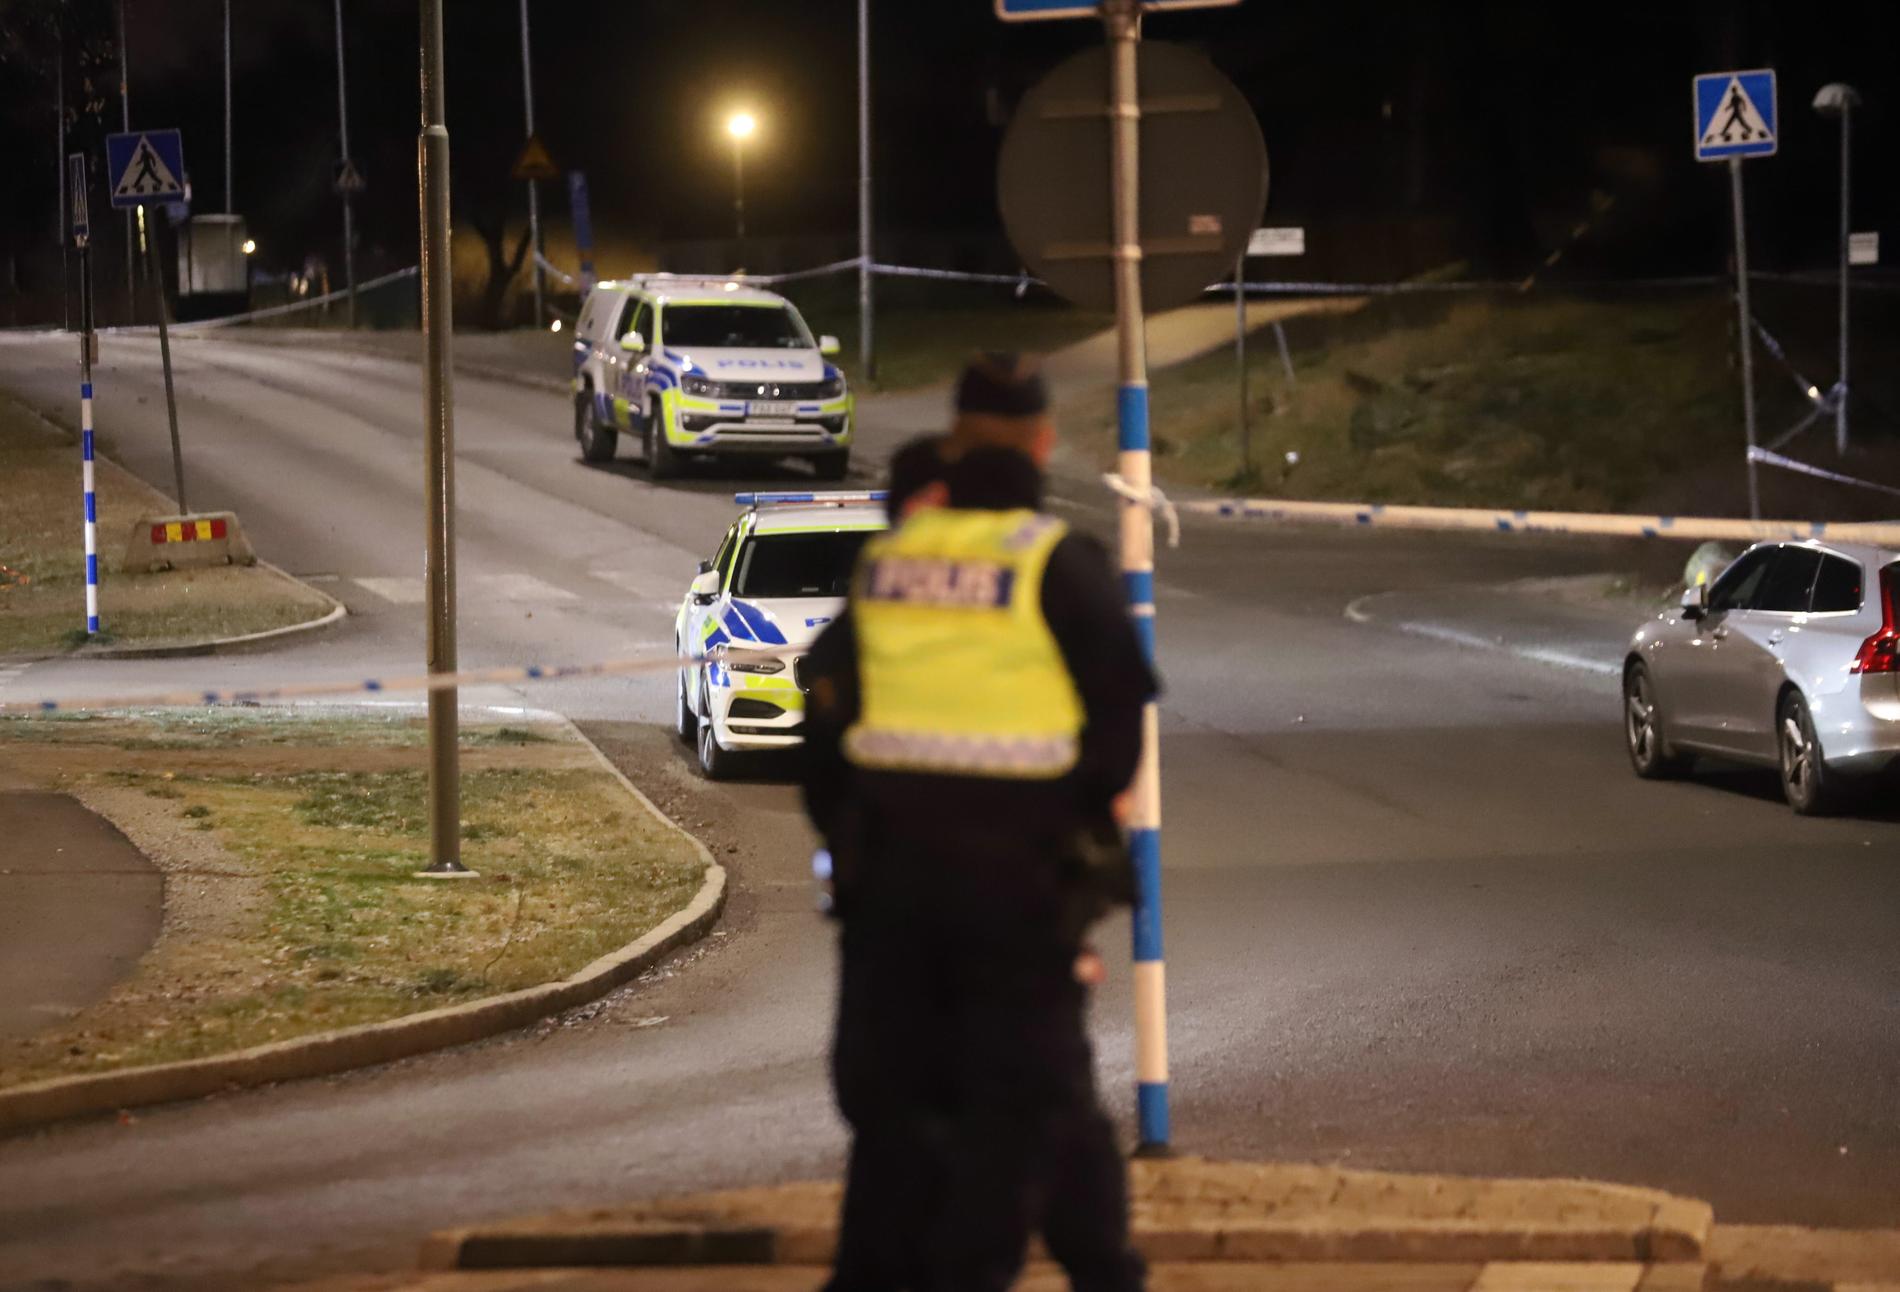 Polisen arbetar på platsen i Huddinge i södra Stockholm där en man sköts ihjäl på söndagskvällen.